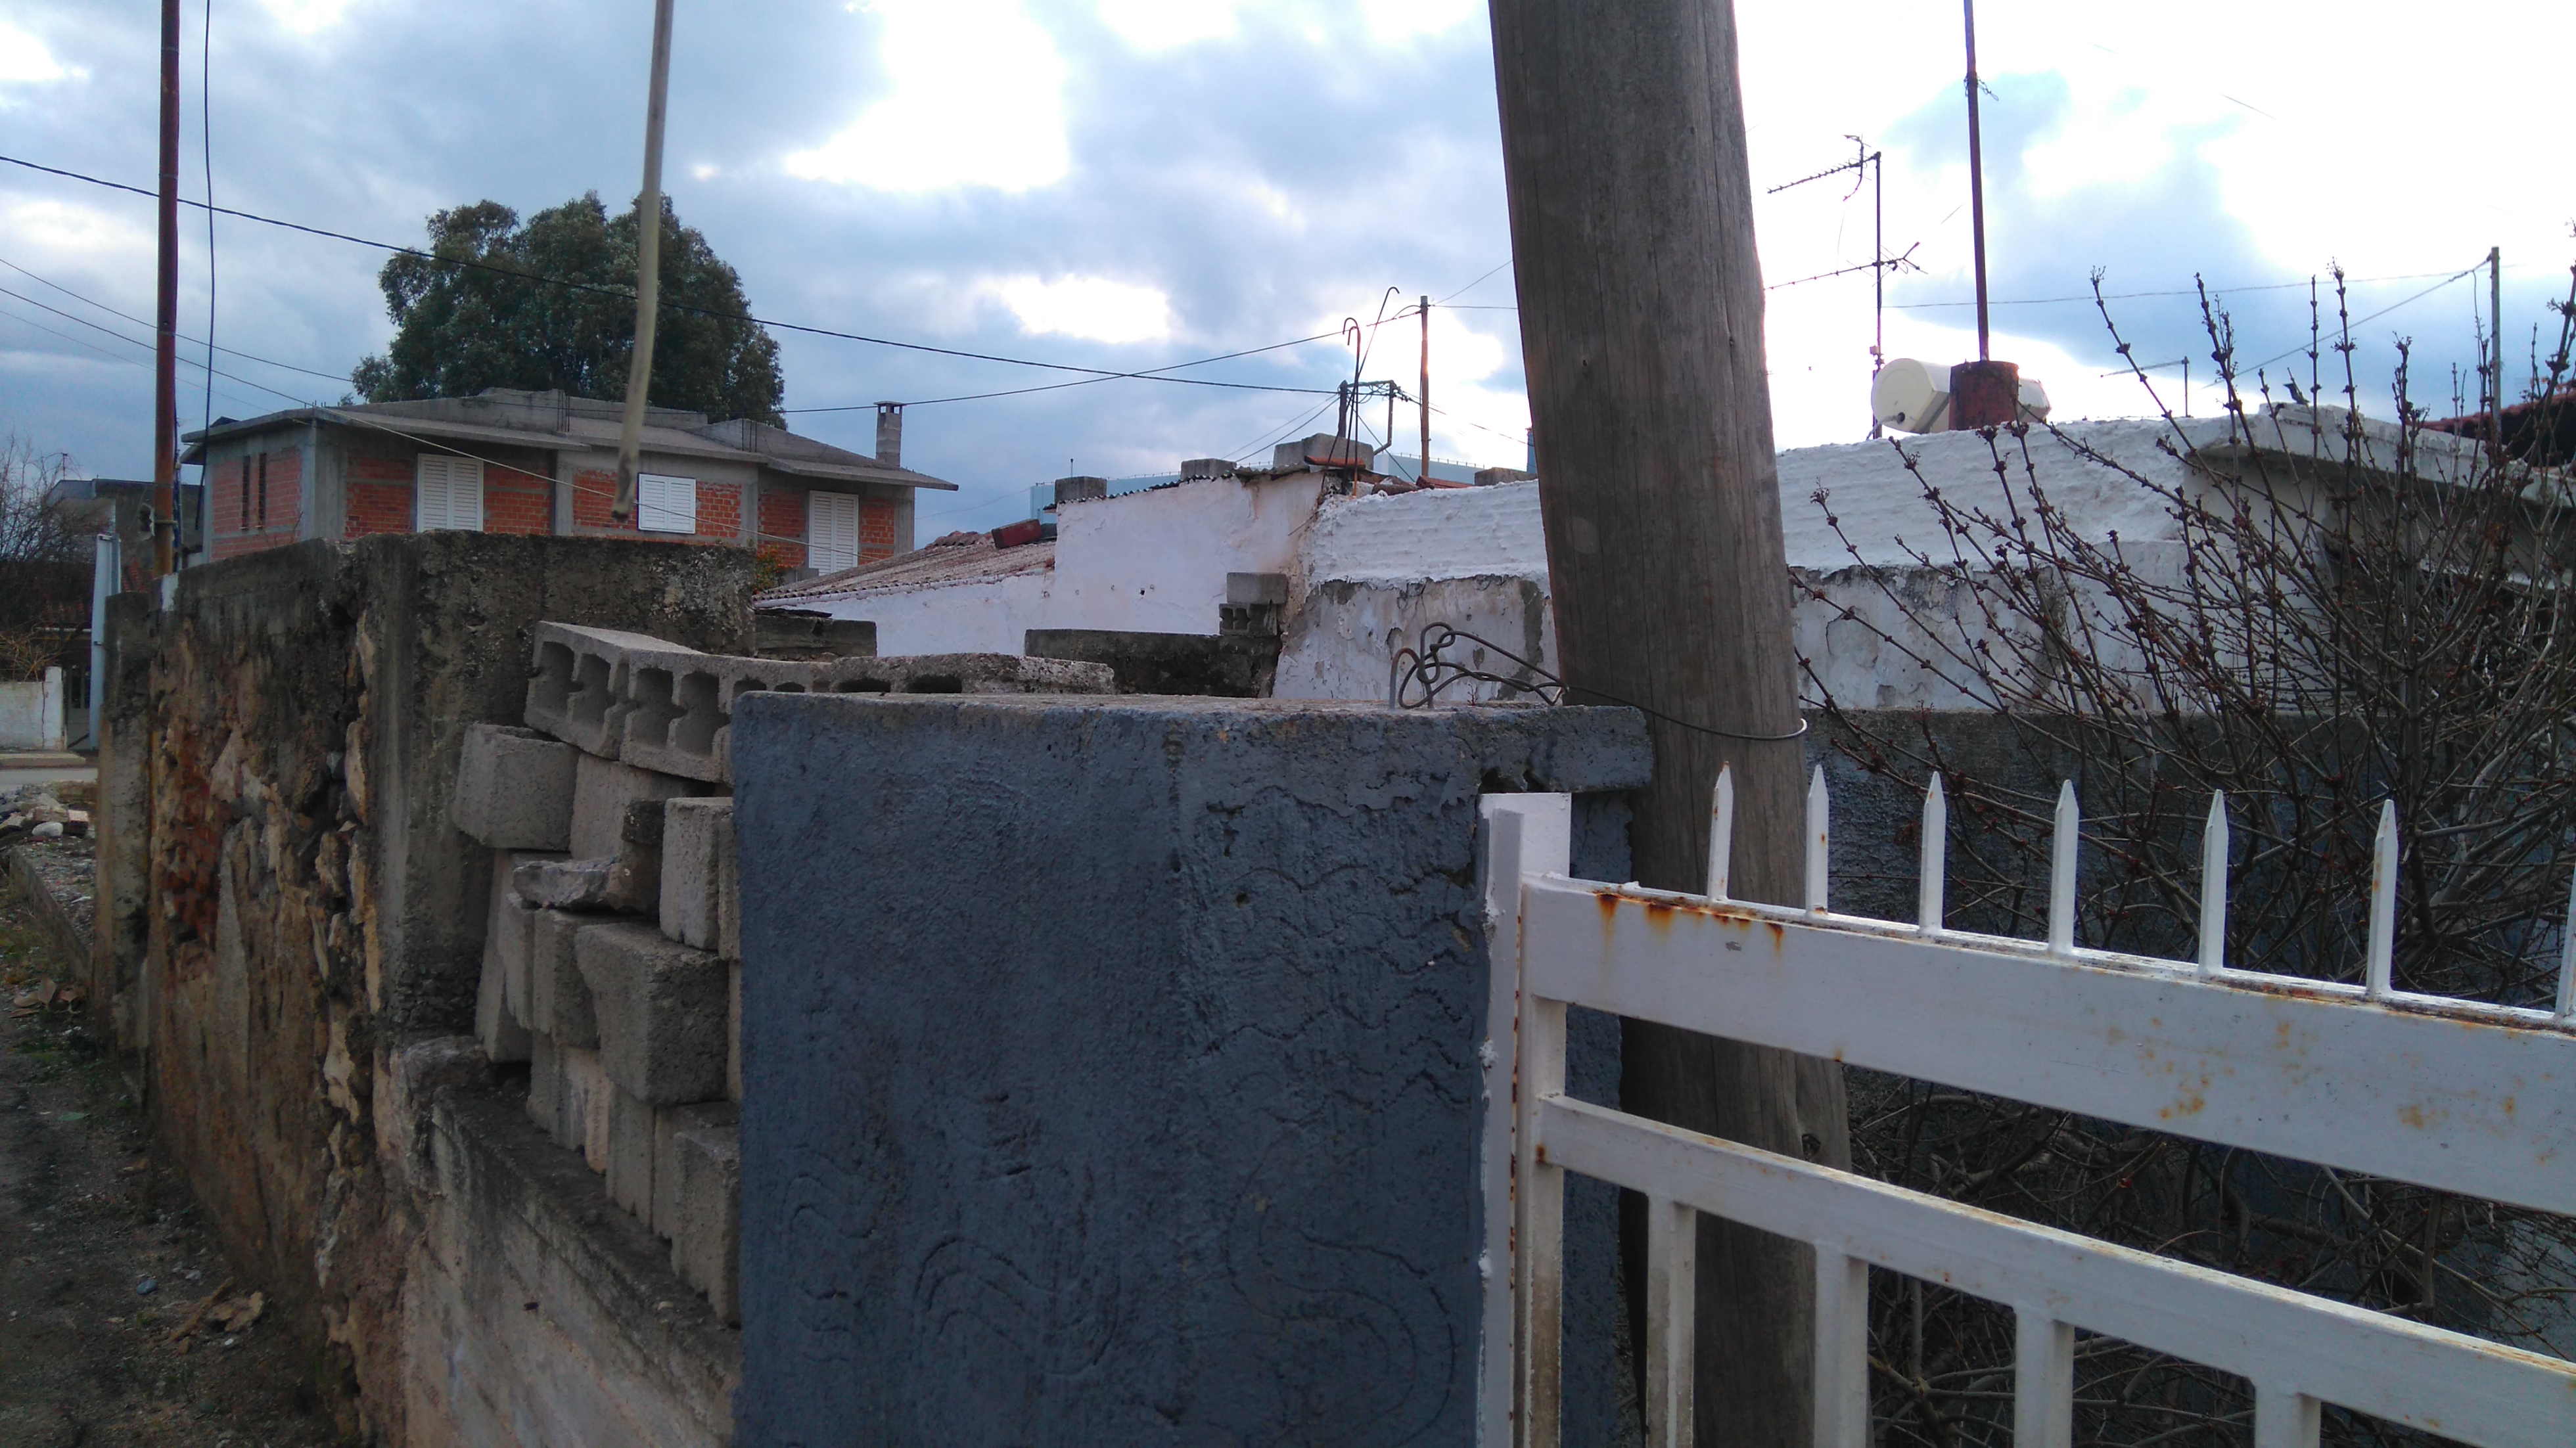 Ψαχνά: Ετοιμόρροπη κολώνα του ΟΤΕ απέναντι από το 3ο Δημοτικό σχολείο Ψαχνών DSC 1210